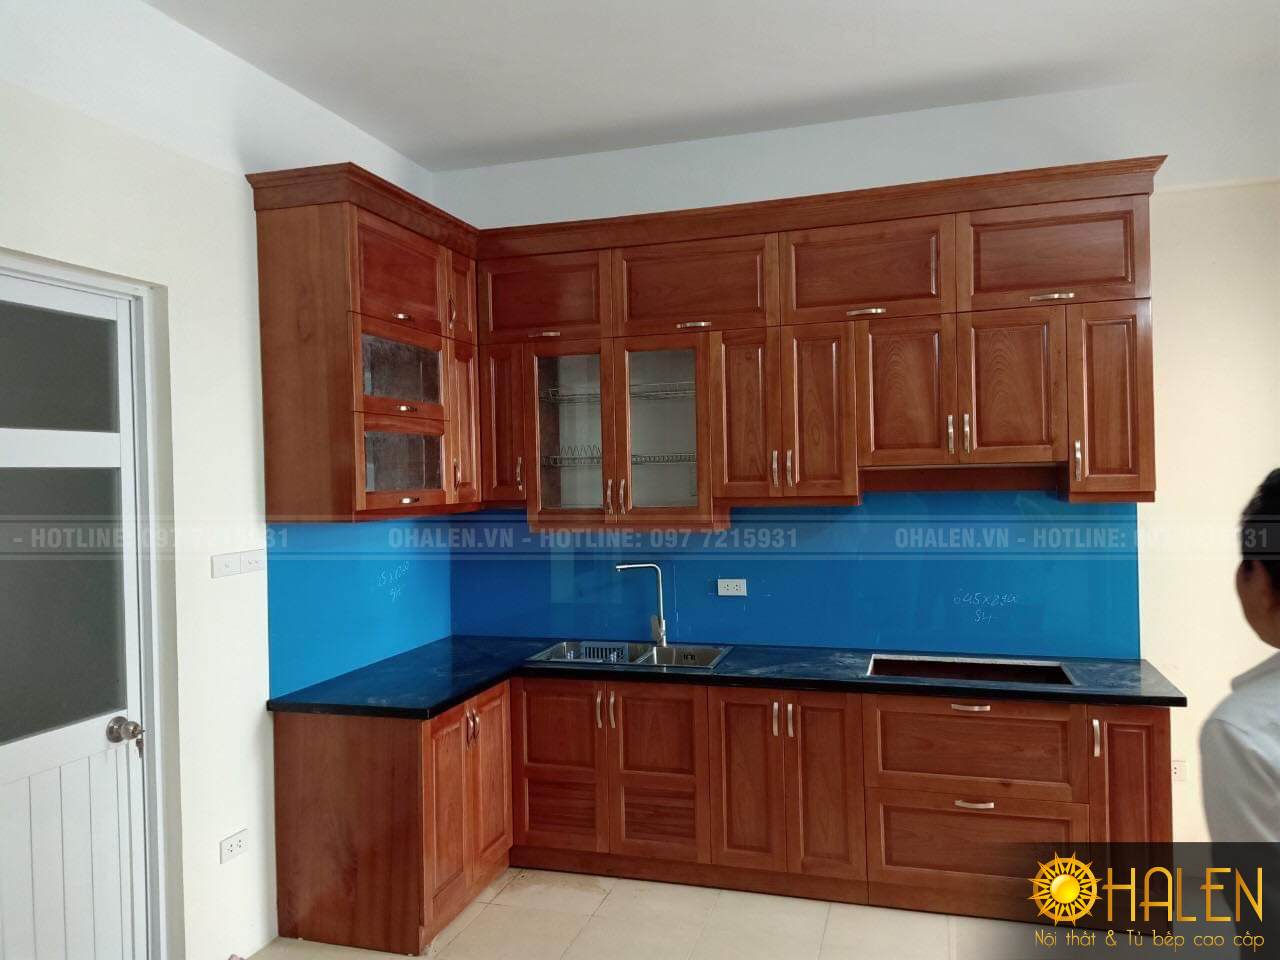 Tủ bếp gỗ xoan đào phun màu cánh gián ấm cúng cùng kính bếp màu xanh cho gia chủ mệnh Thủy